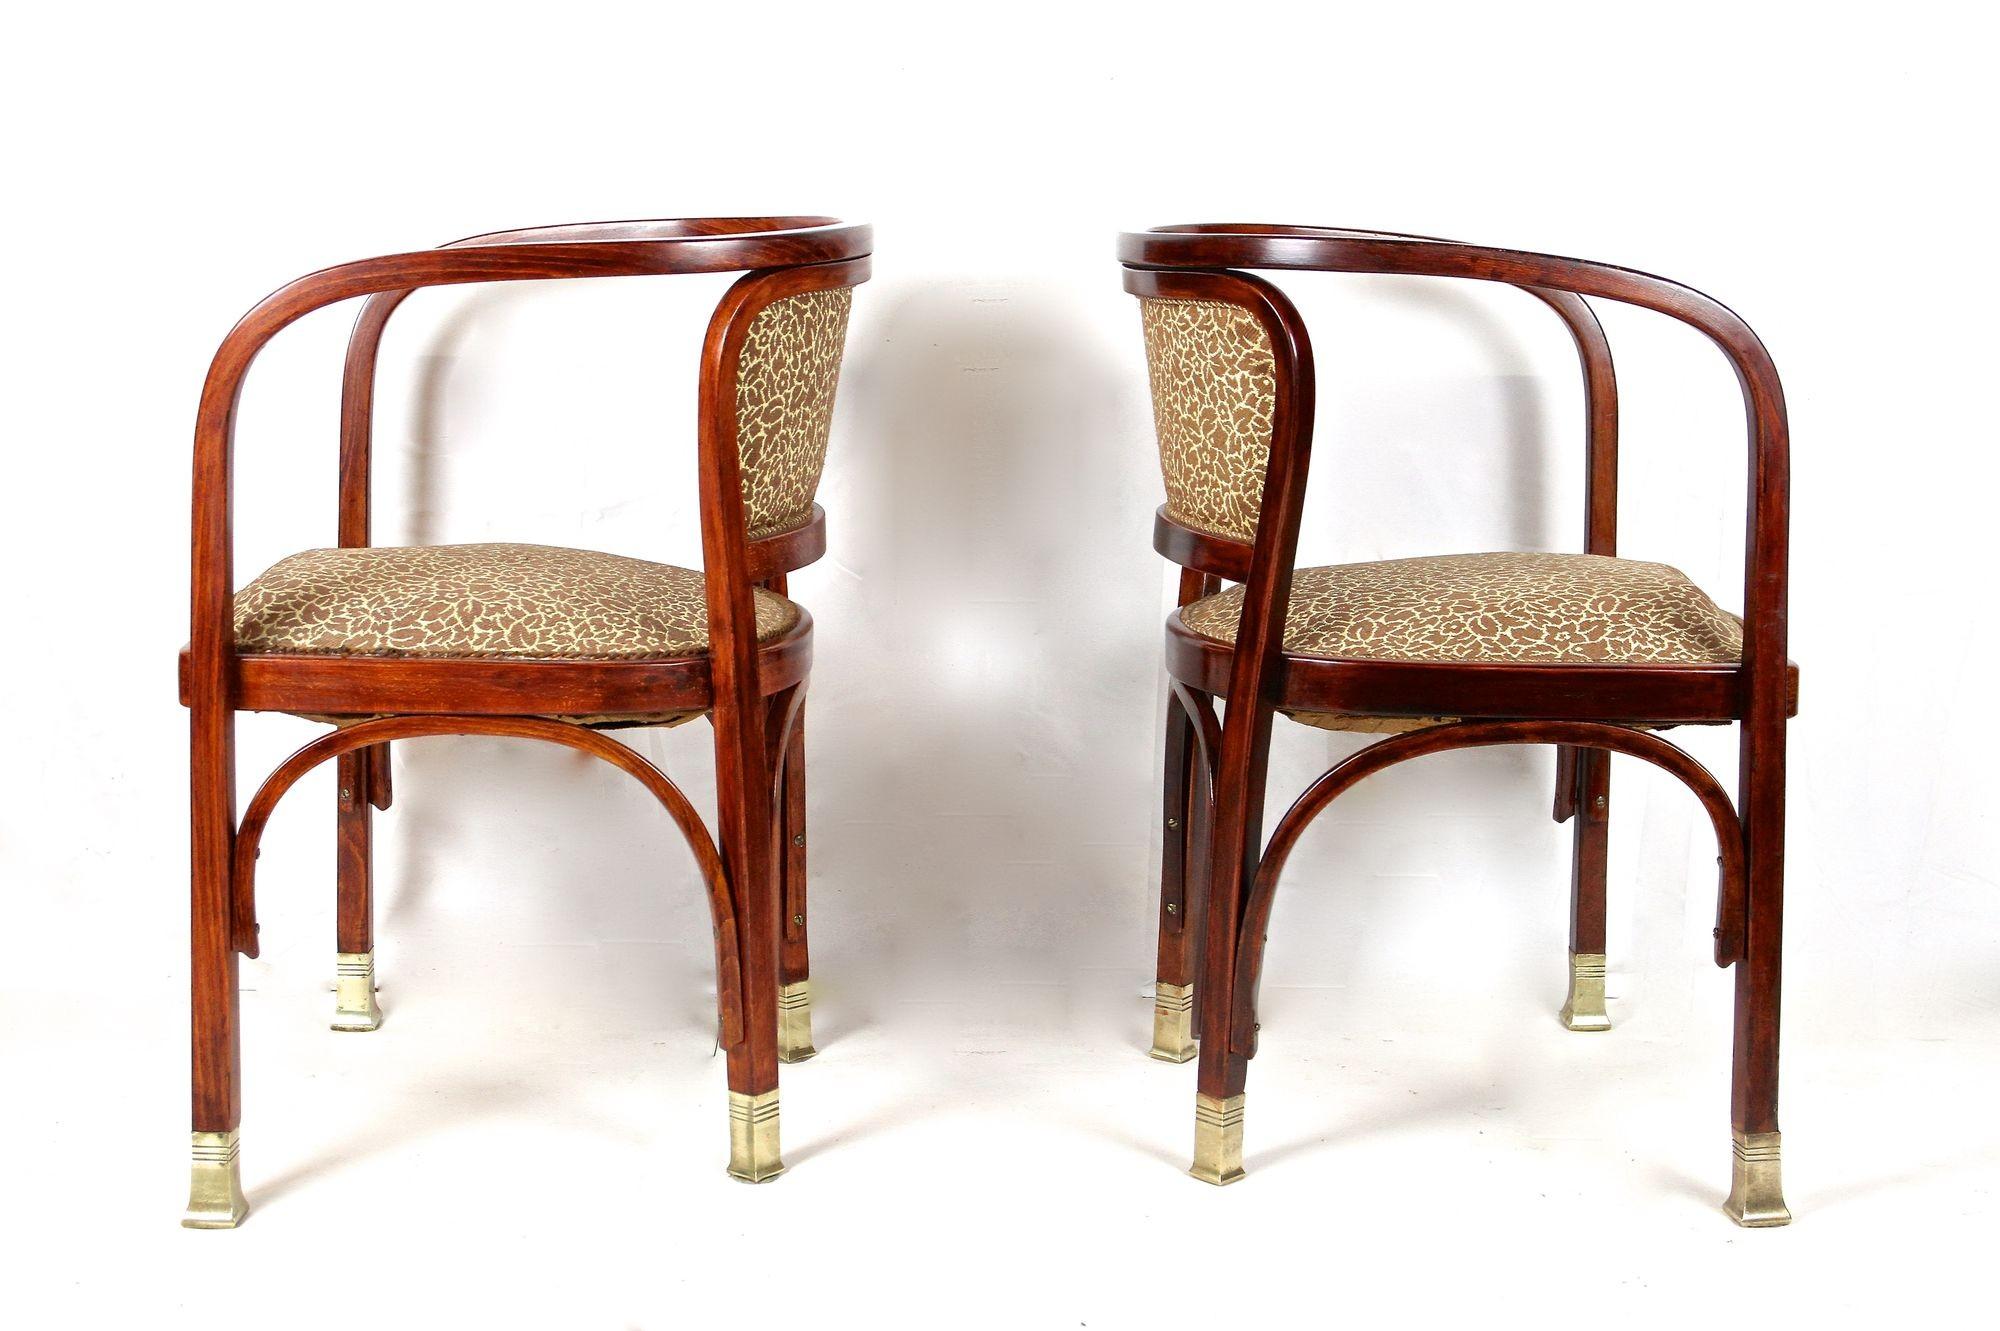 Laiton Paire de fauteuils Art nouveau de Gustav Siegel pour J&J Kohn, Autriche, vers 1905 en vente